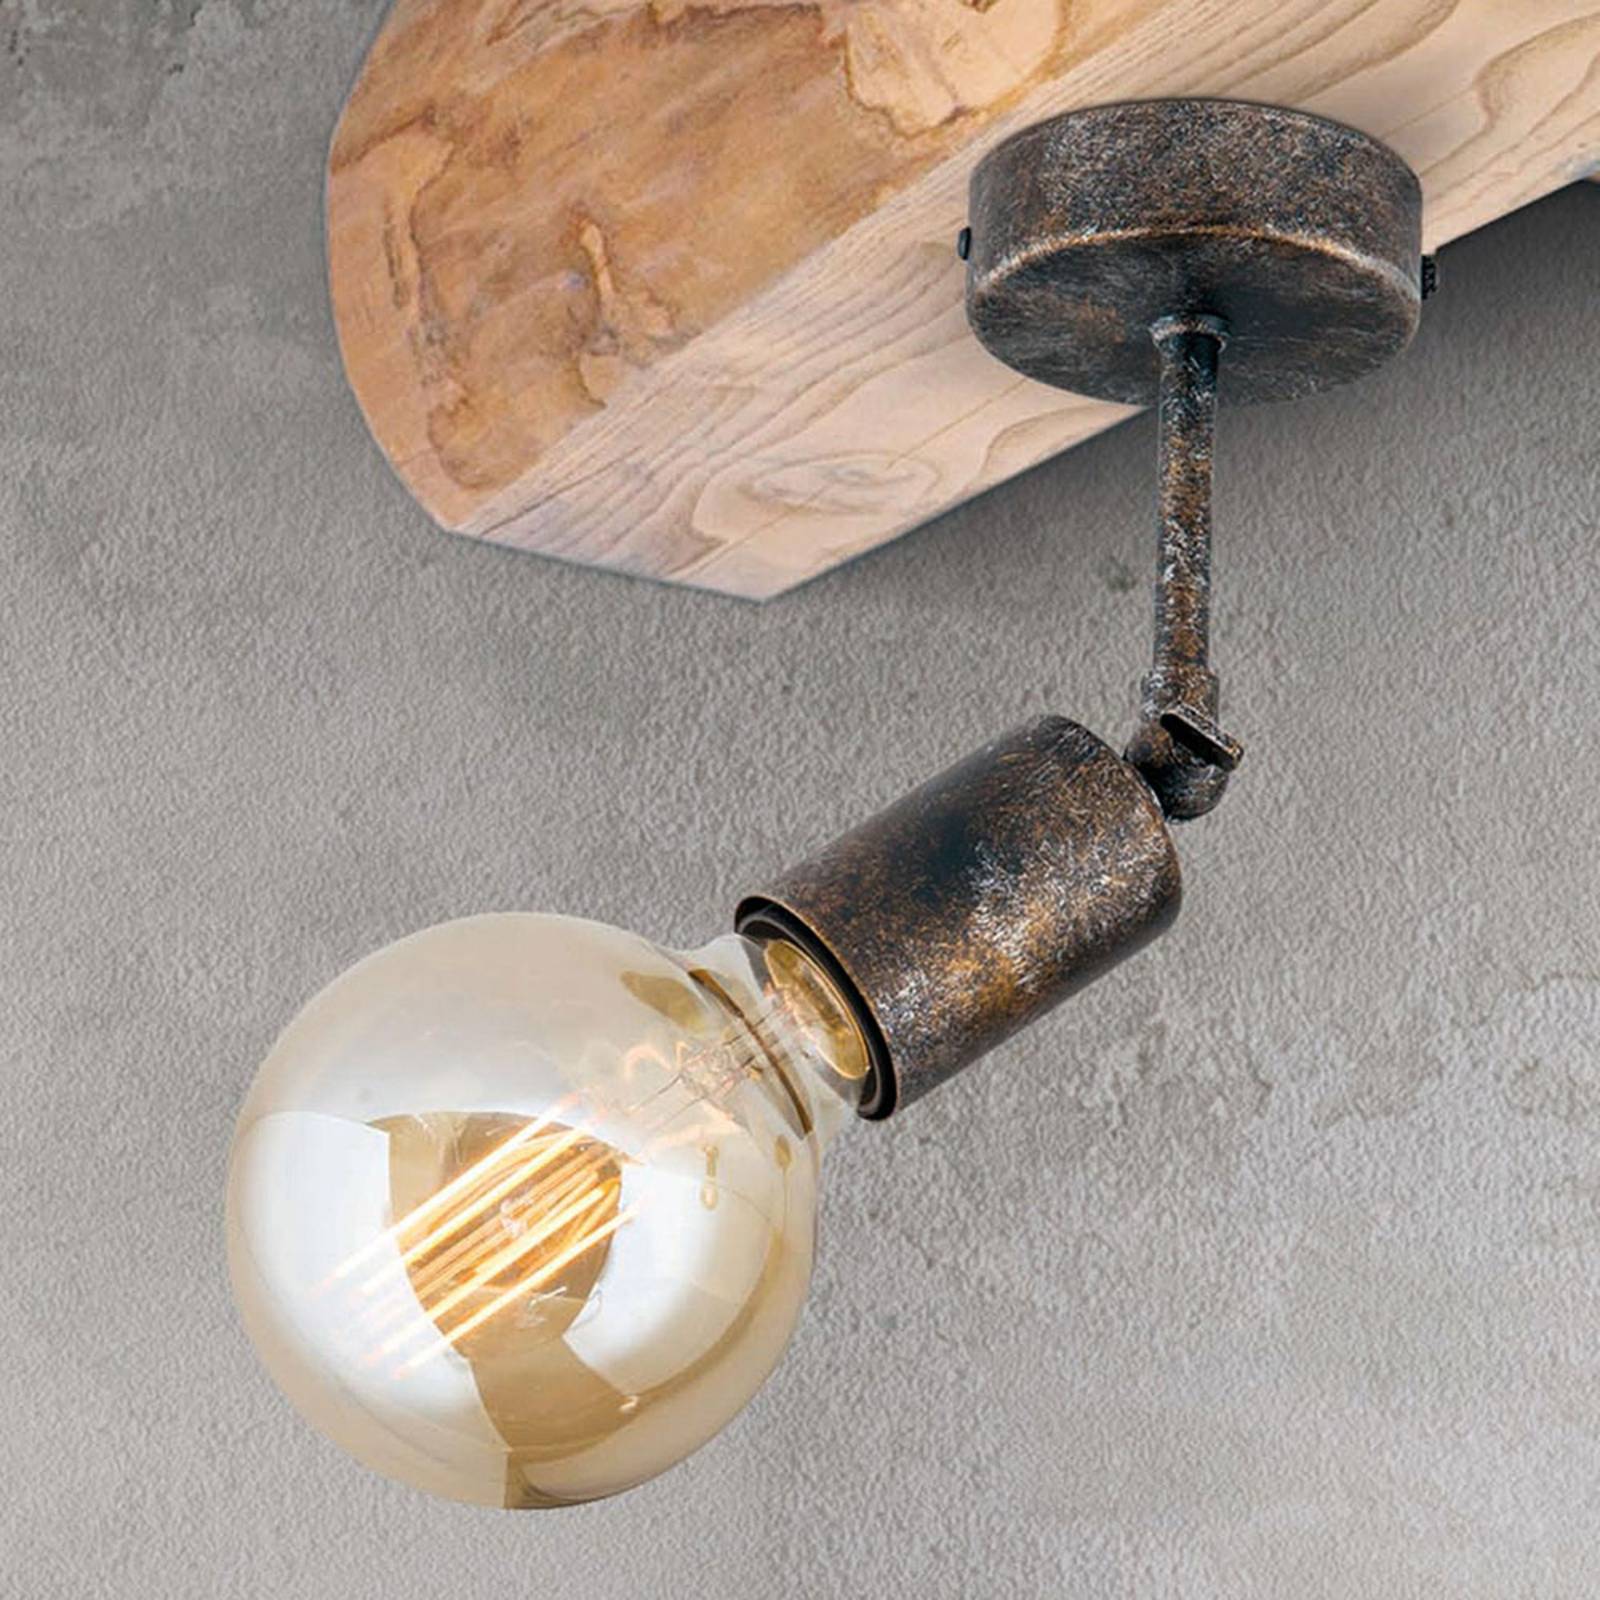 Beweeglijke plafondlamp Rati in vintage look